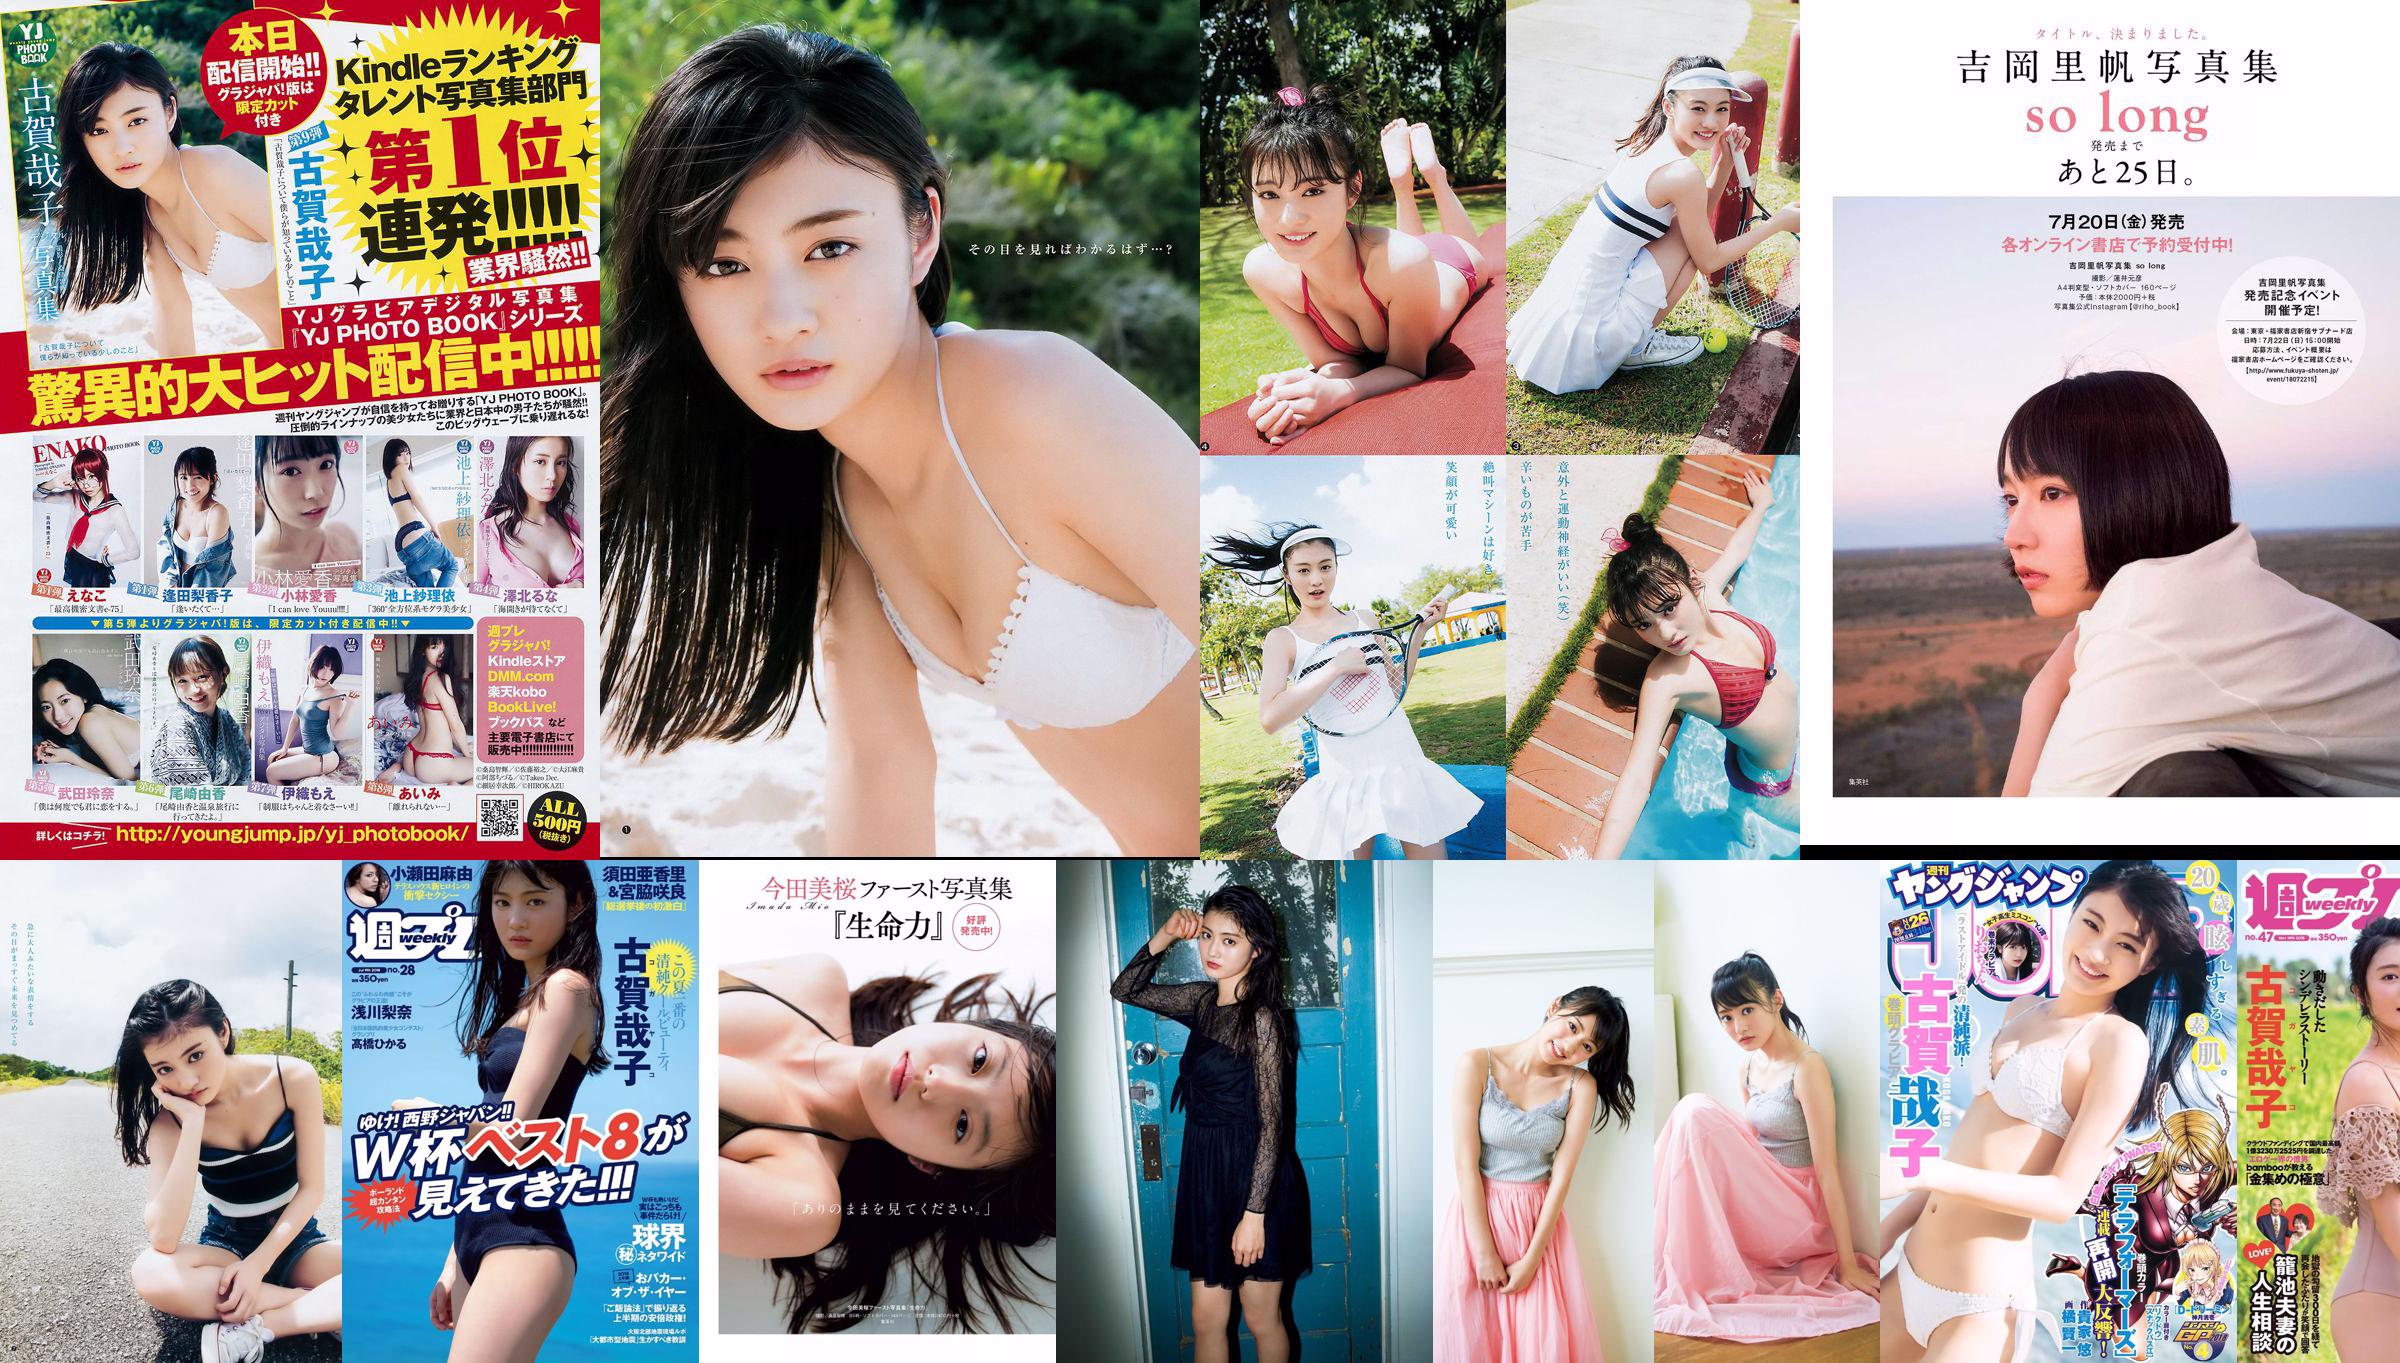 Yoshiko Koga Riochon [Wekelijkse Young Jump] nr. 26 fotomagazine in 2018 No.195efe Pagina 1